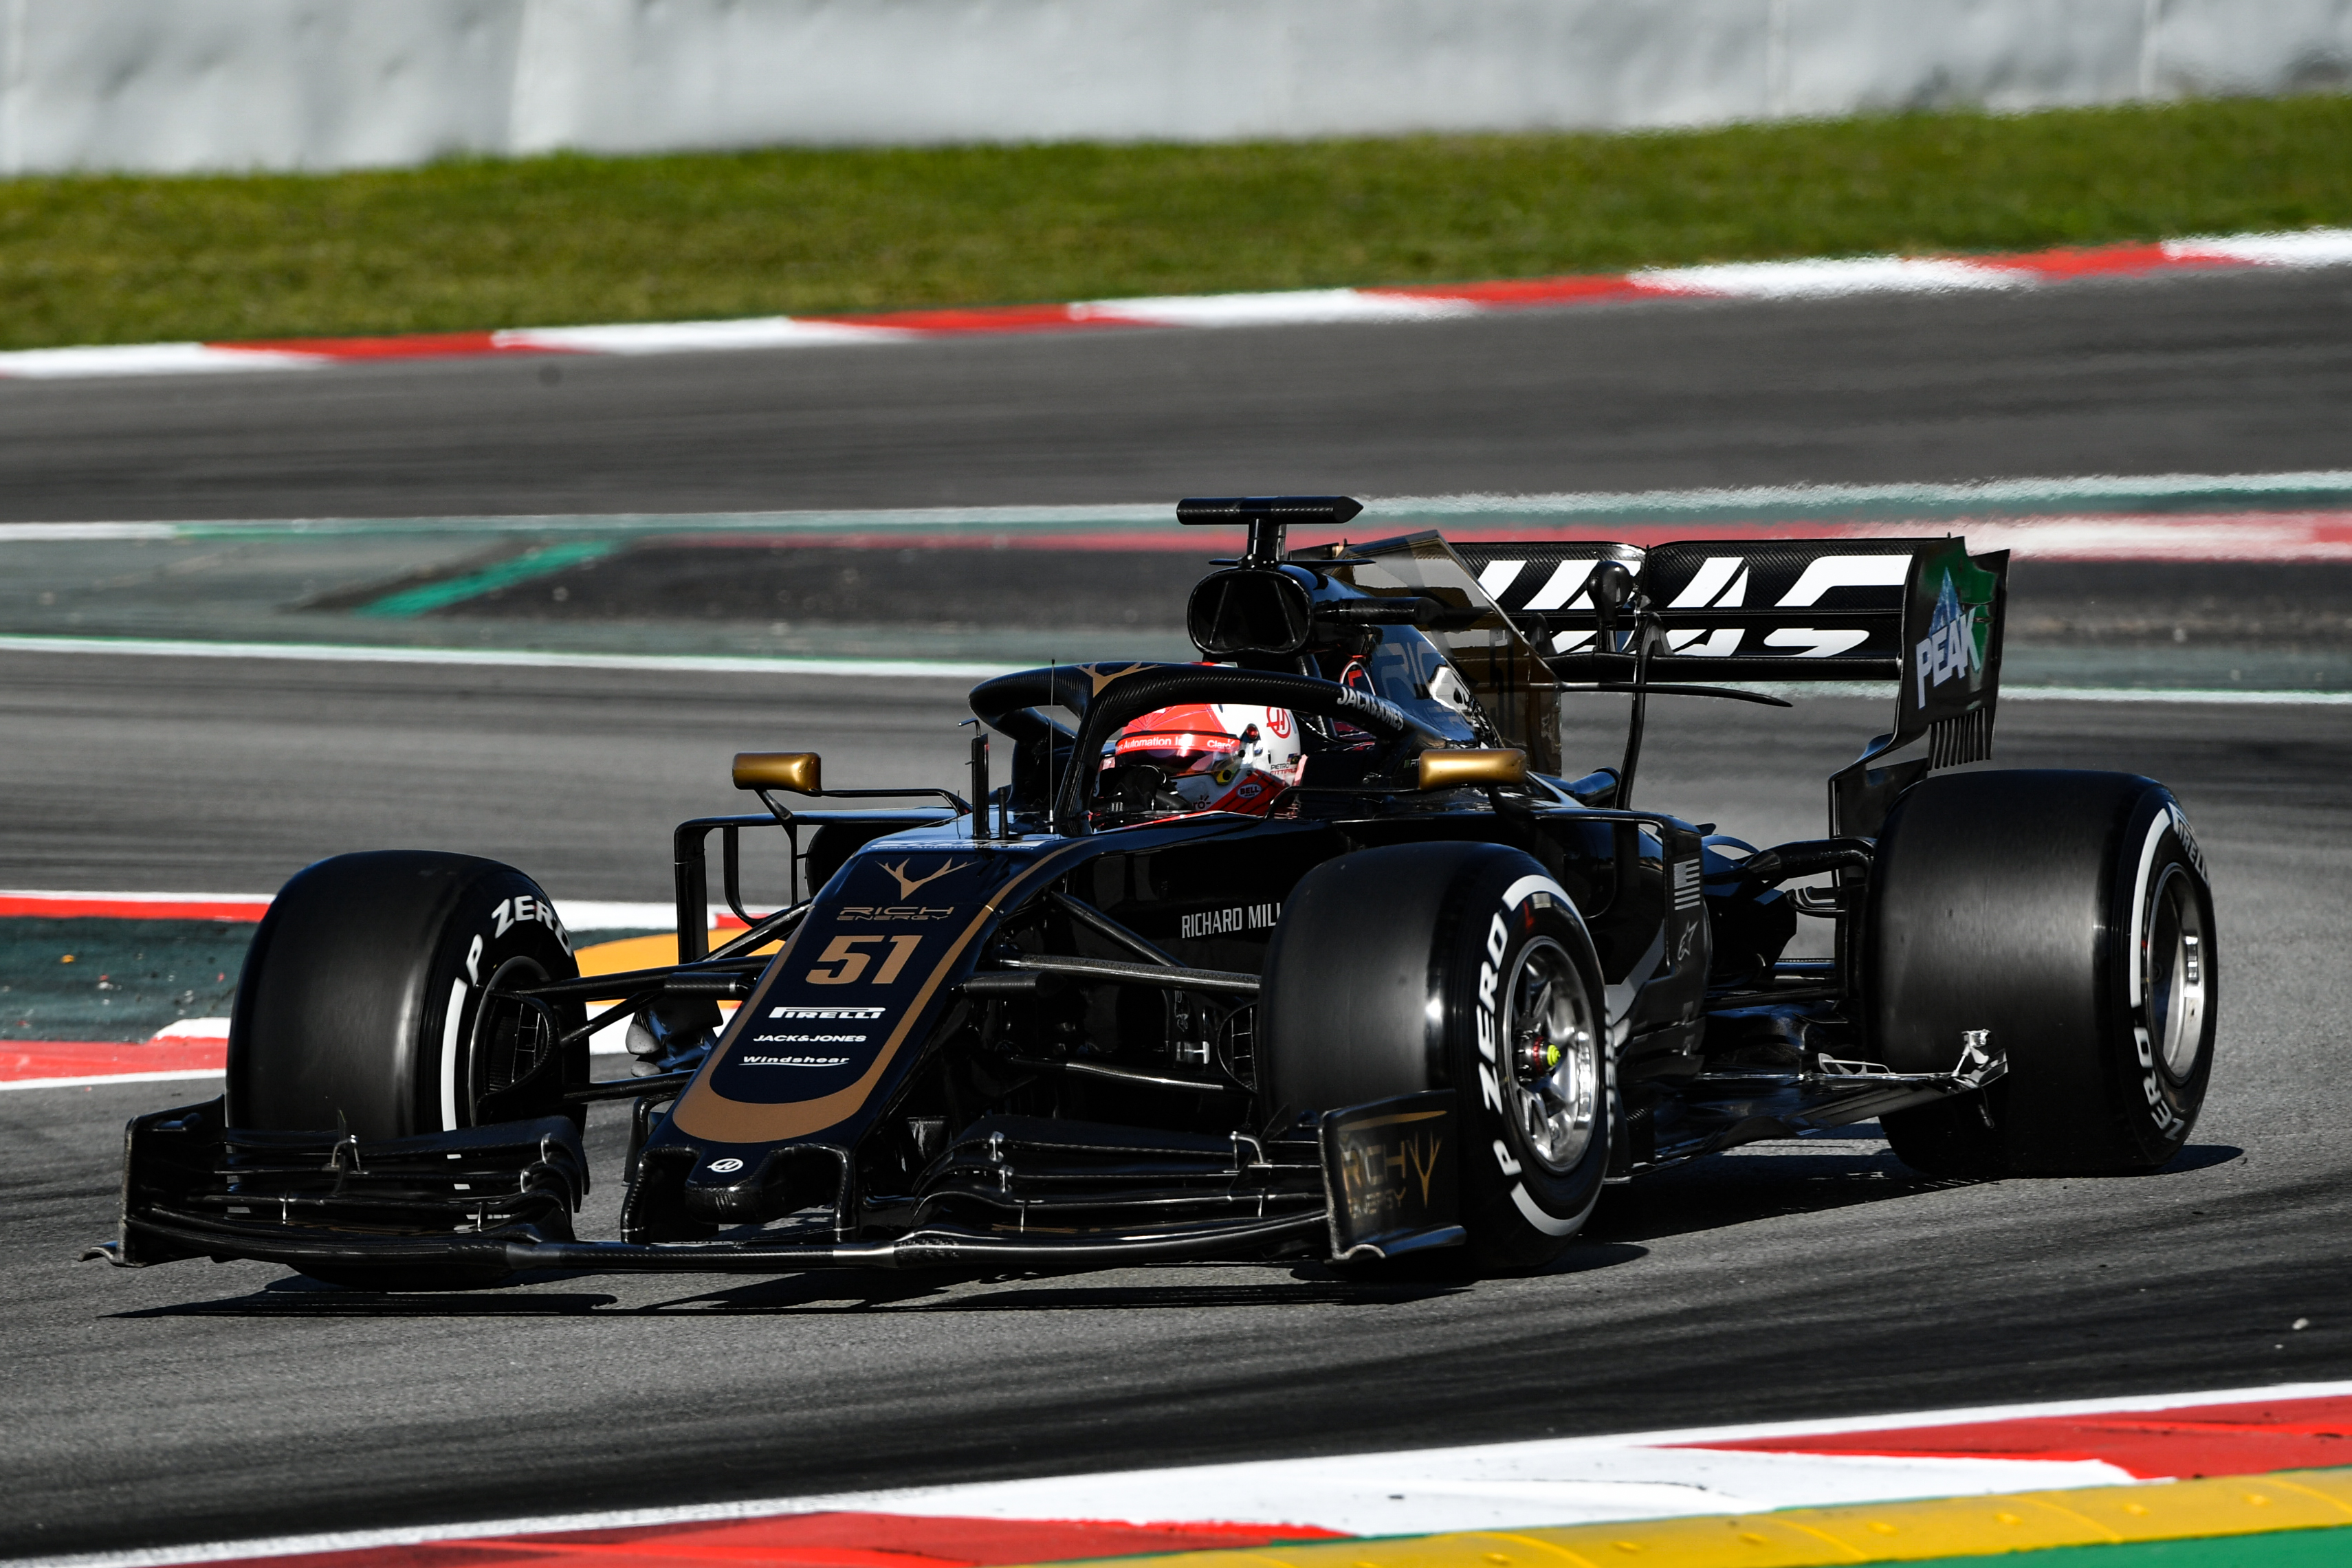 F1: Szuperlicenszet akar szerezni tesztpilótájának a Haas